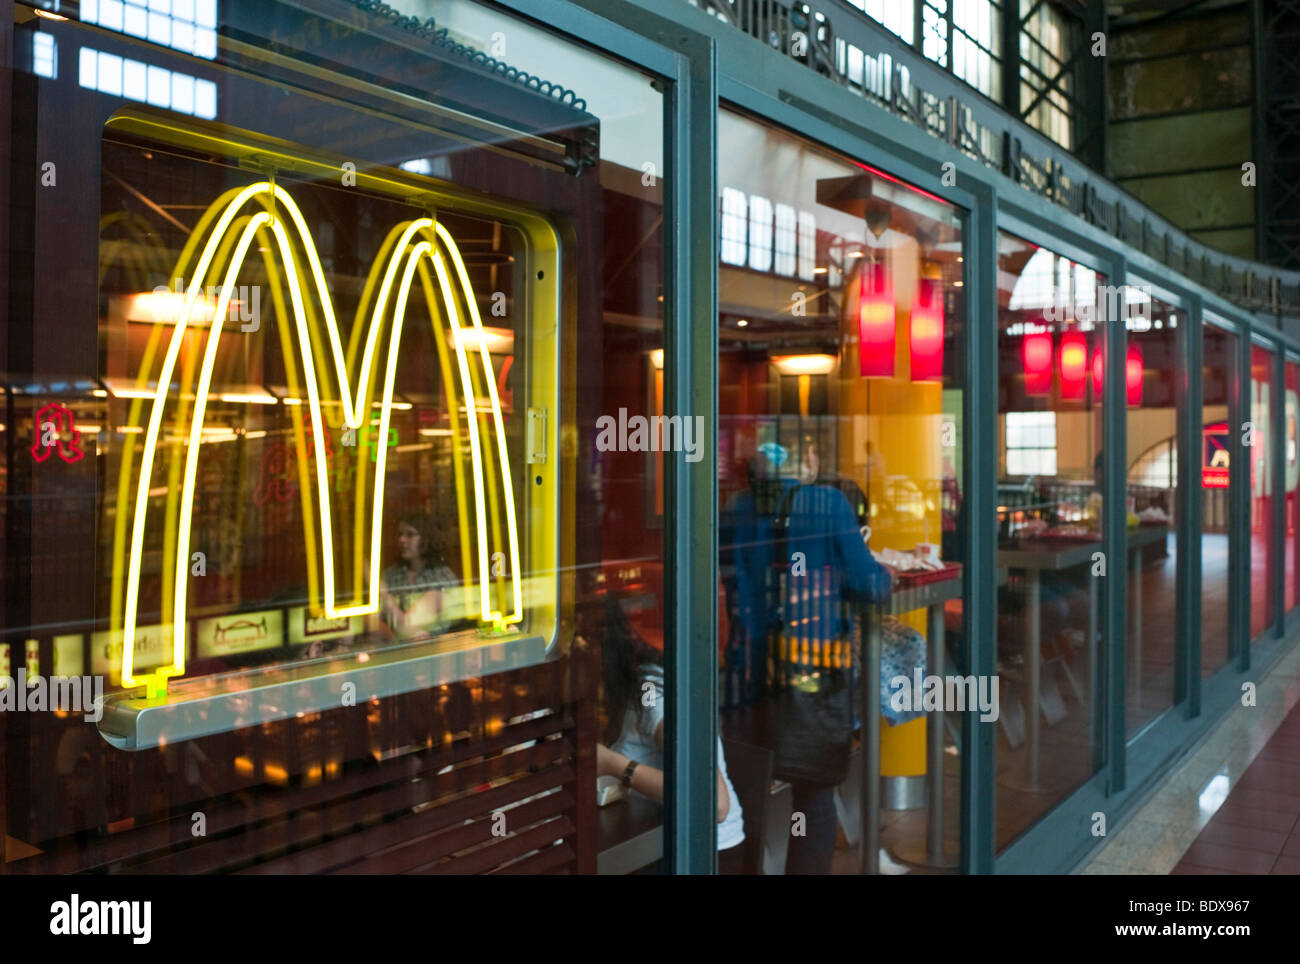 Chaîne de restauration rapide McDonald's, Hambourg, Allemagne, Europe Banque D'Images